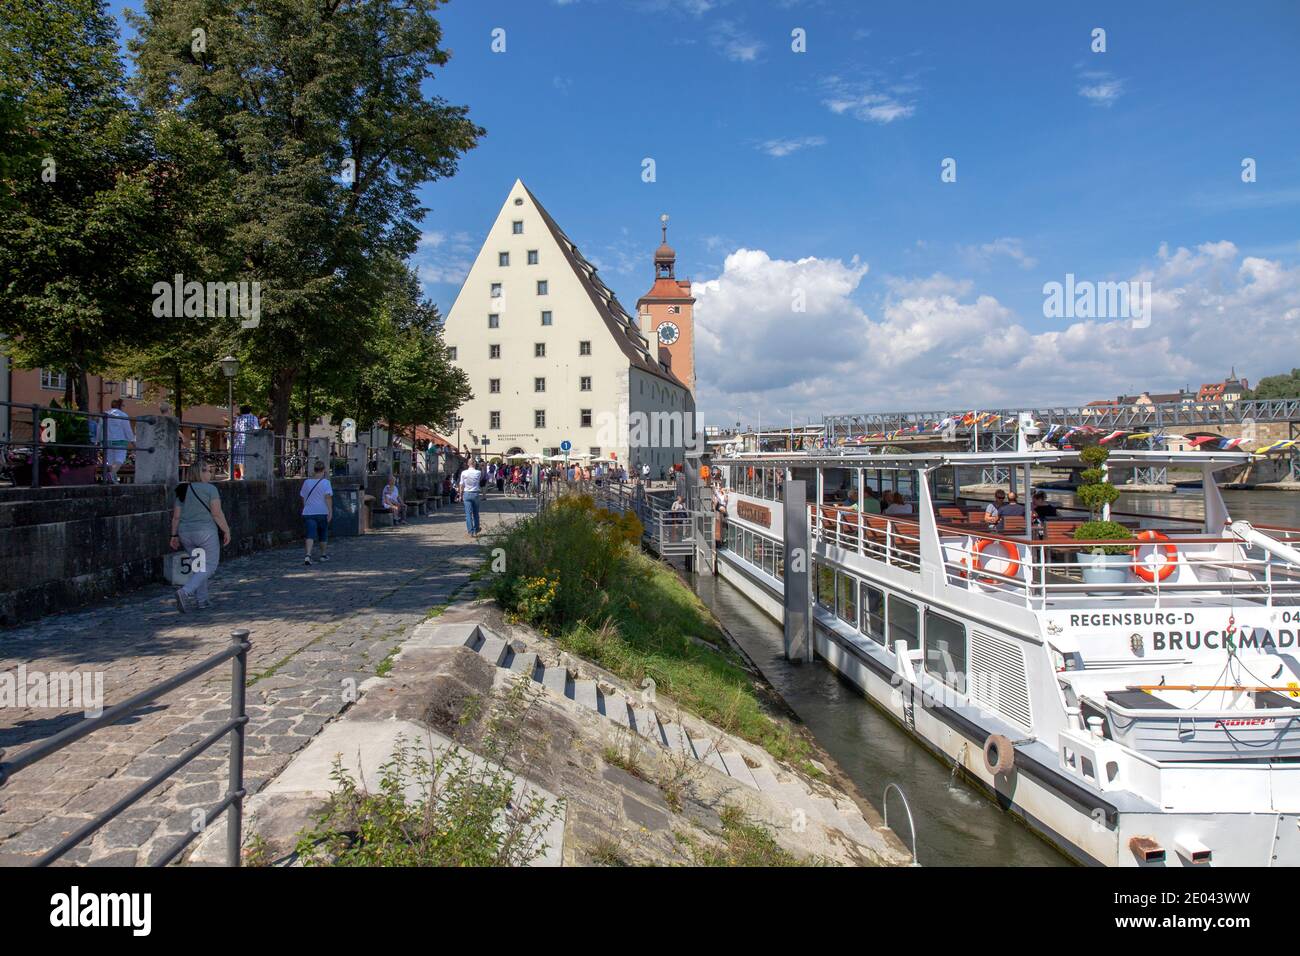 Quai du Danube, avec Besucherzentrum Welterbe à distance et bateau à aubes Bruckmadl en premier plan à droite, Ratisbonne, Bavière, Allemagne. Ce musée focau Banque D'Images